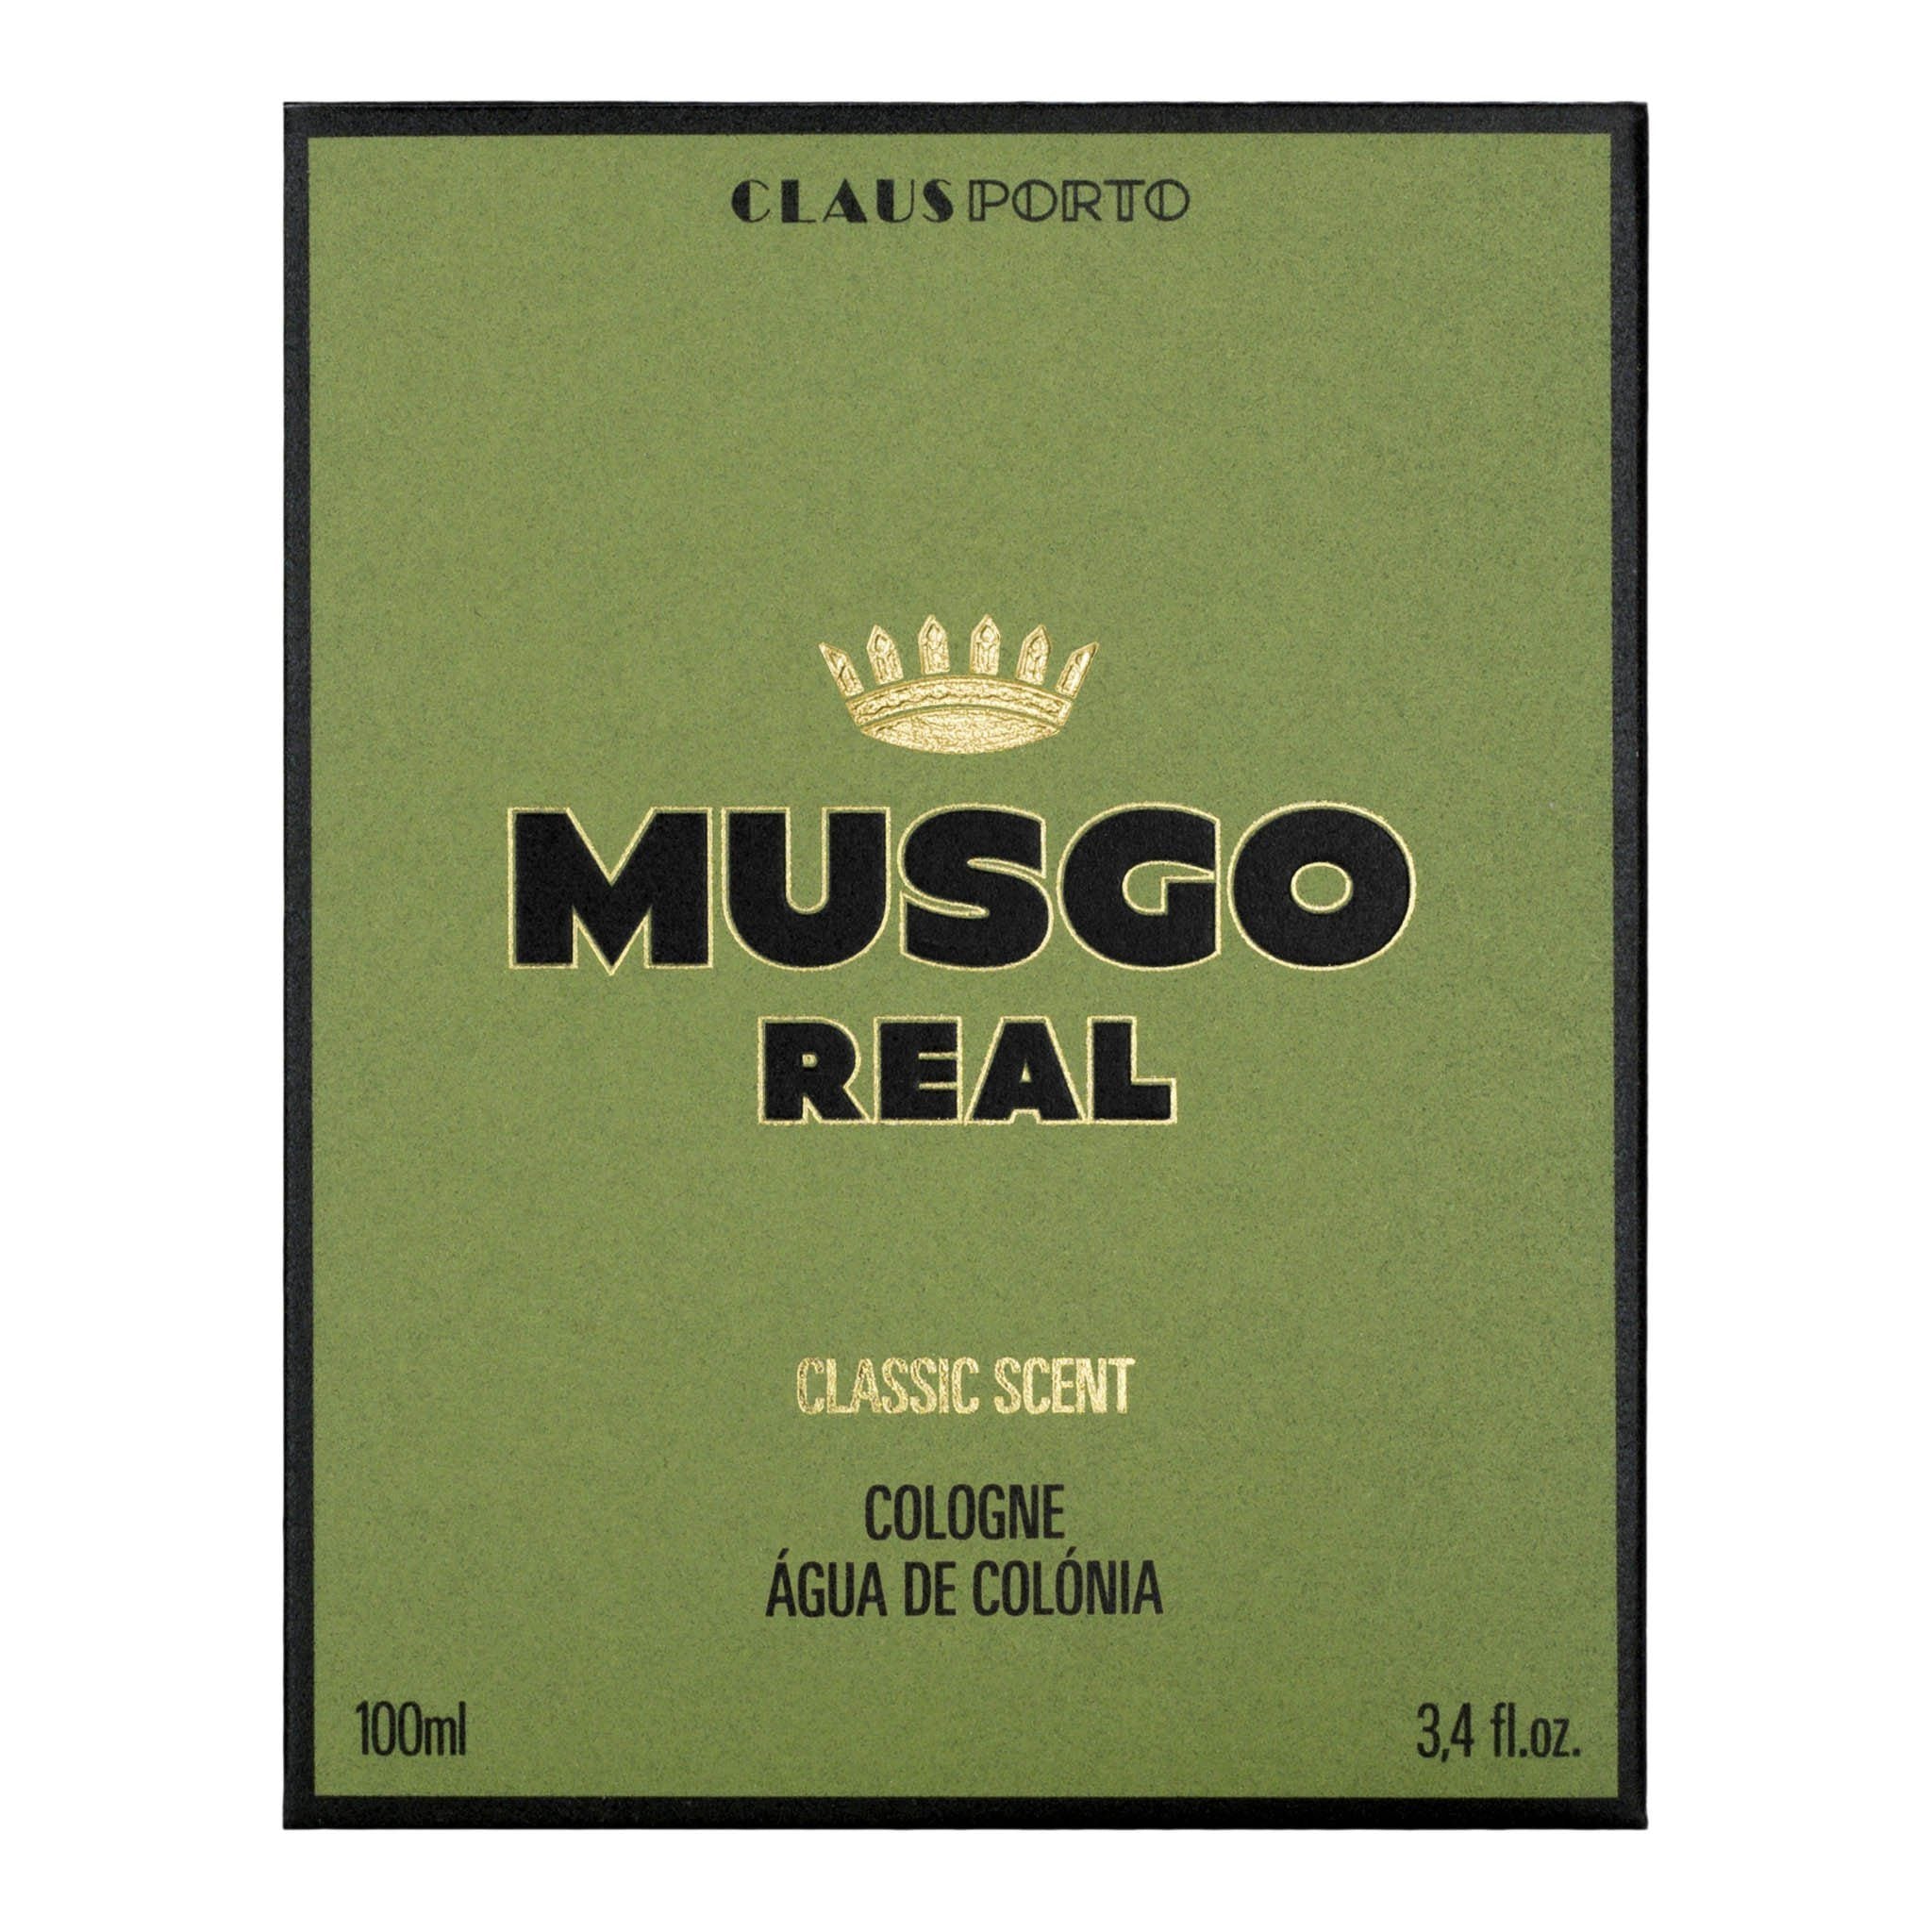 Musgo Real Eau de Cologne Classic Scent